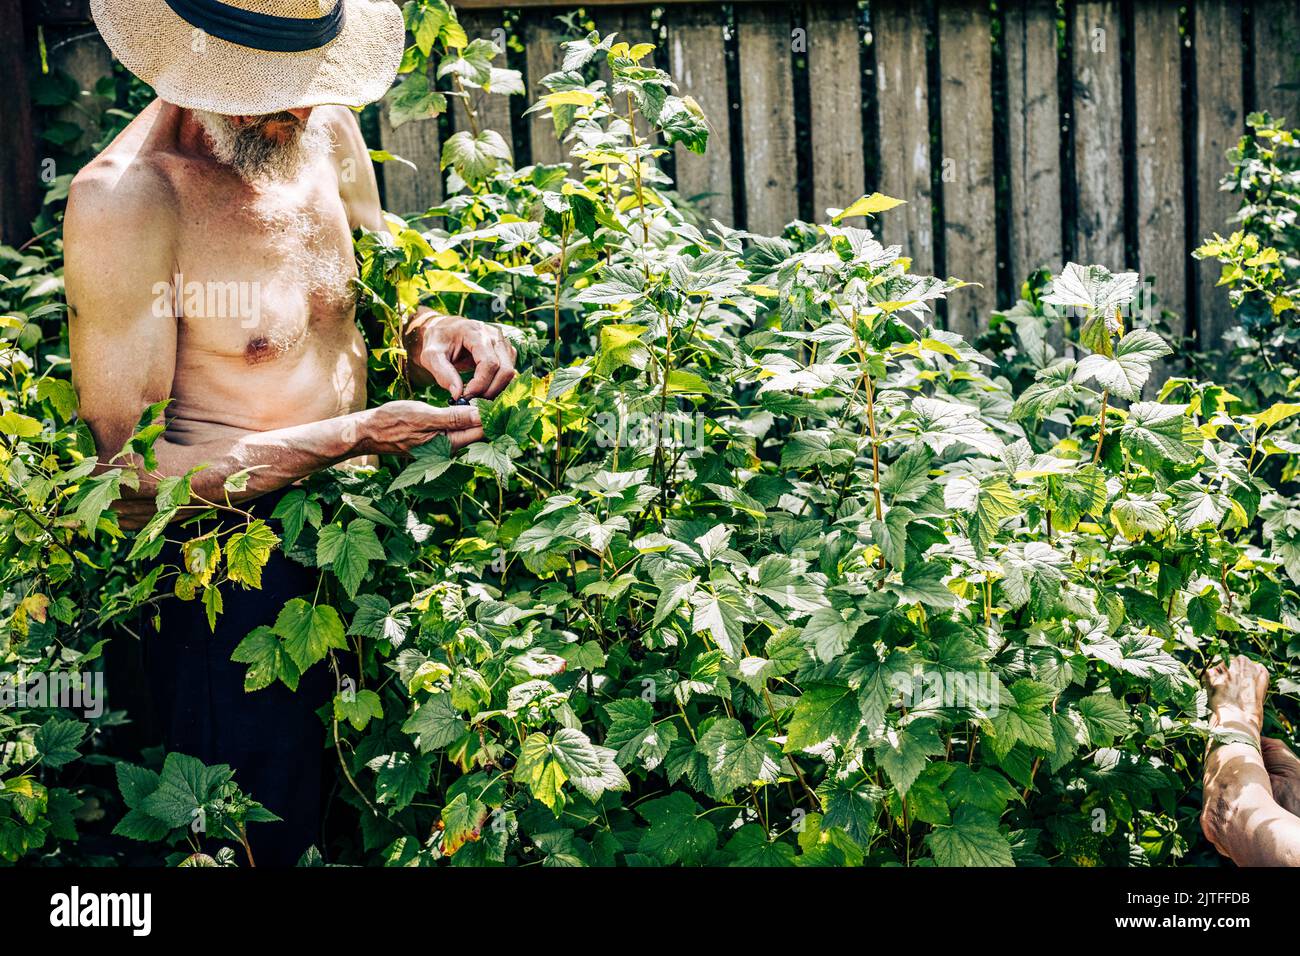 Senior man harvesting currant at summer garden. Mature male gardener picking ripe berries from bush brunch. Elderly pensioner hobbies. Harvesting time Stock Photo